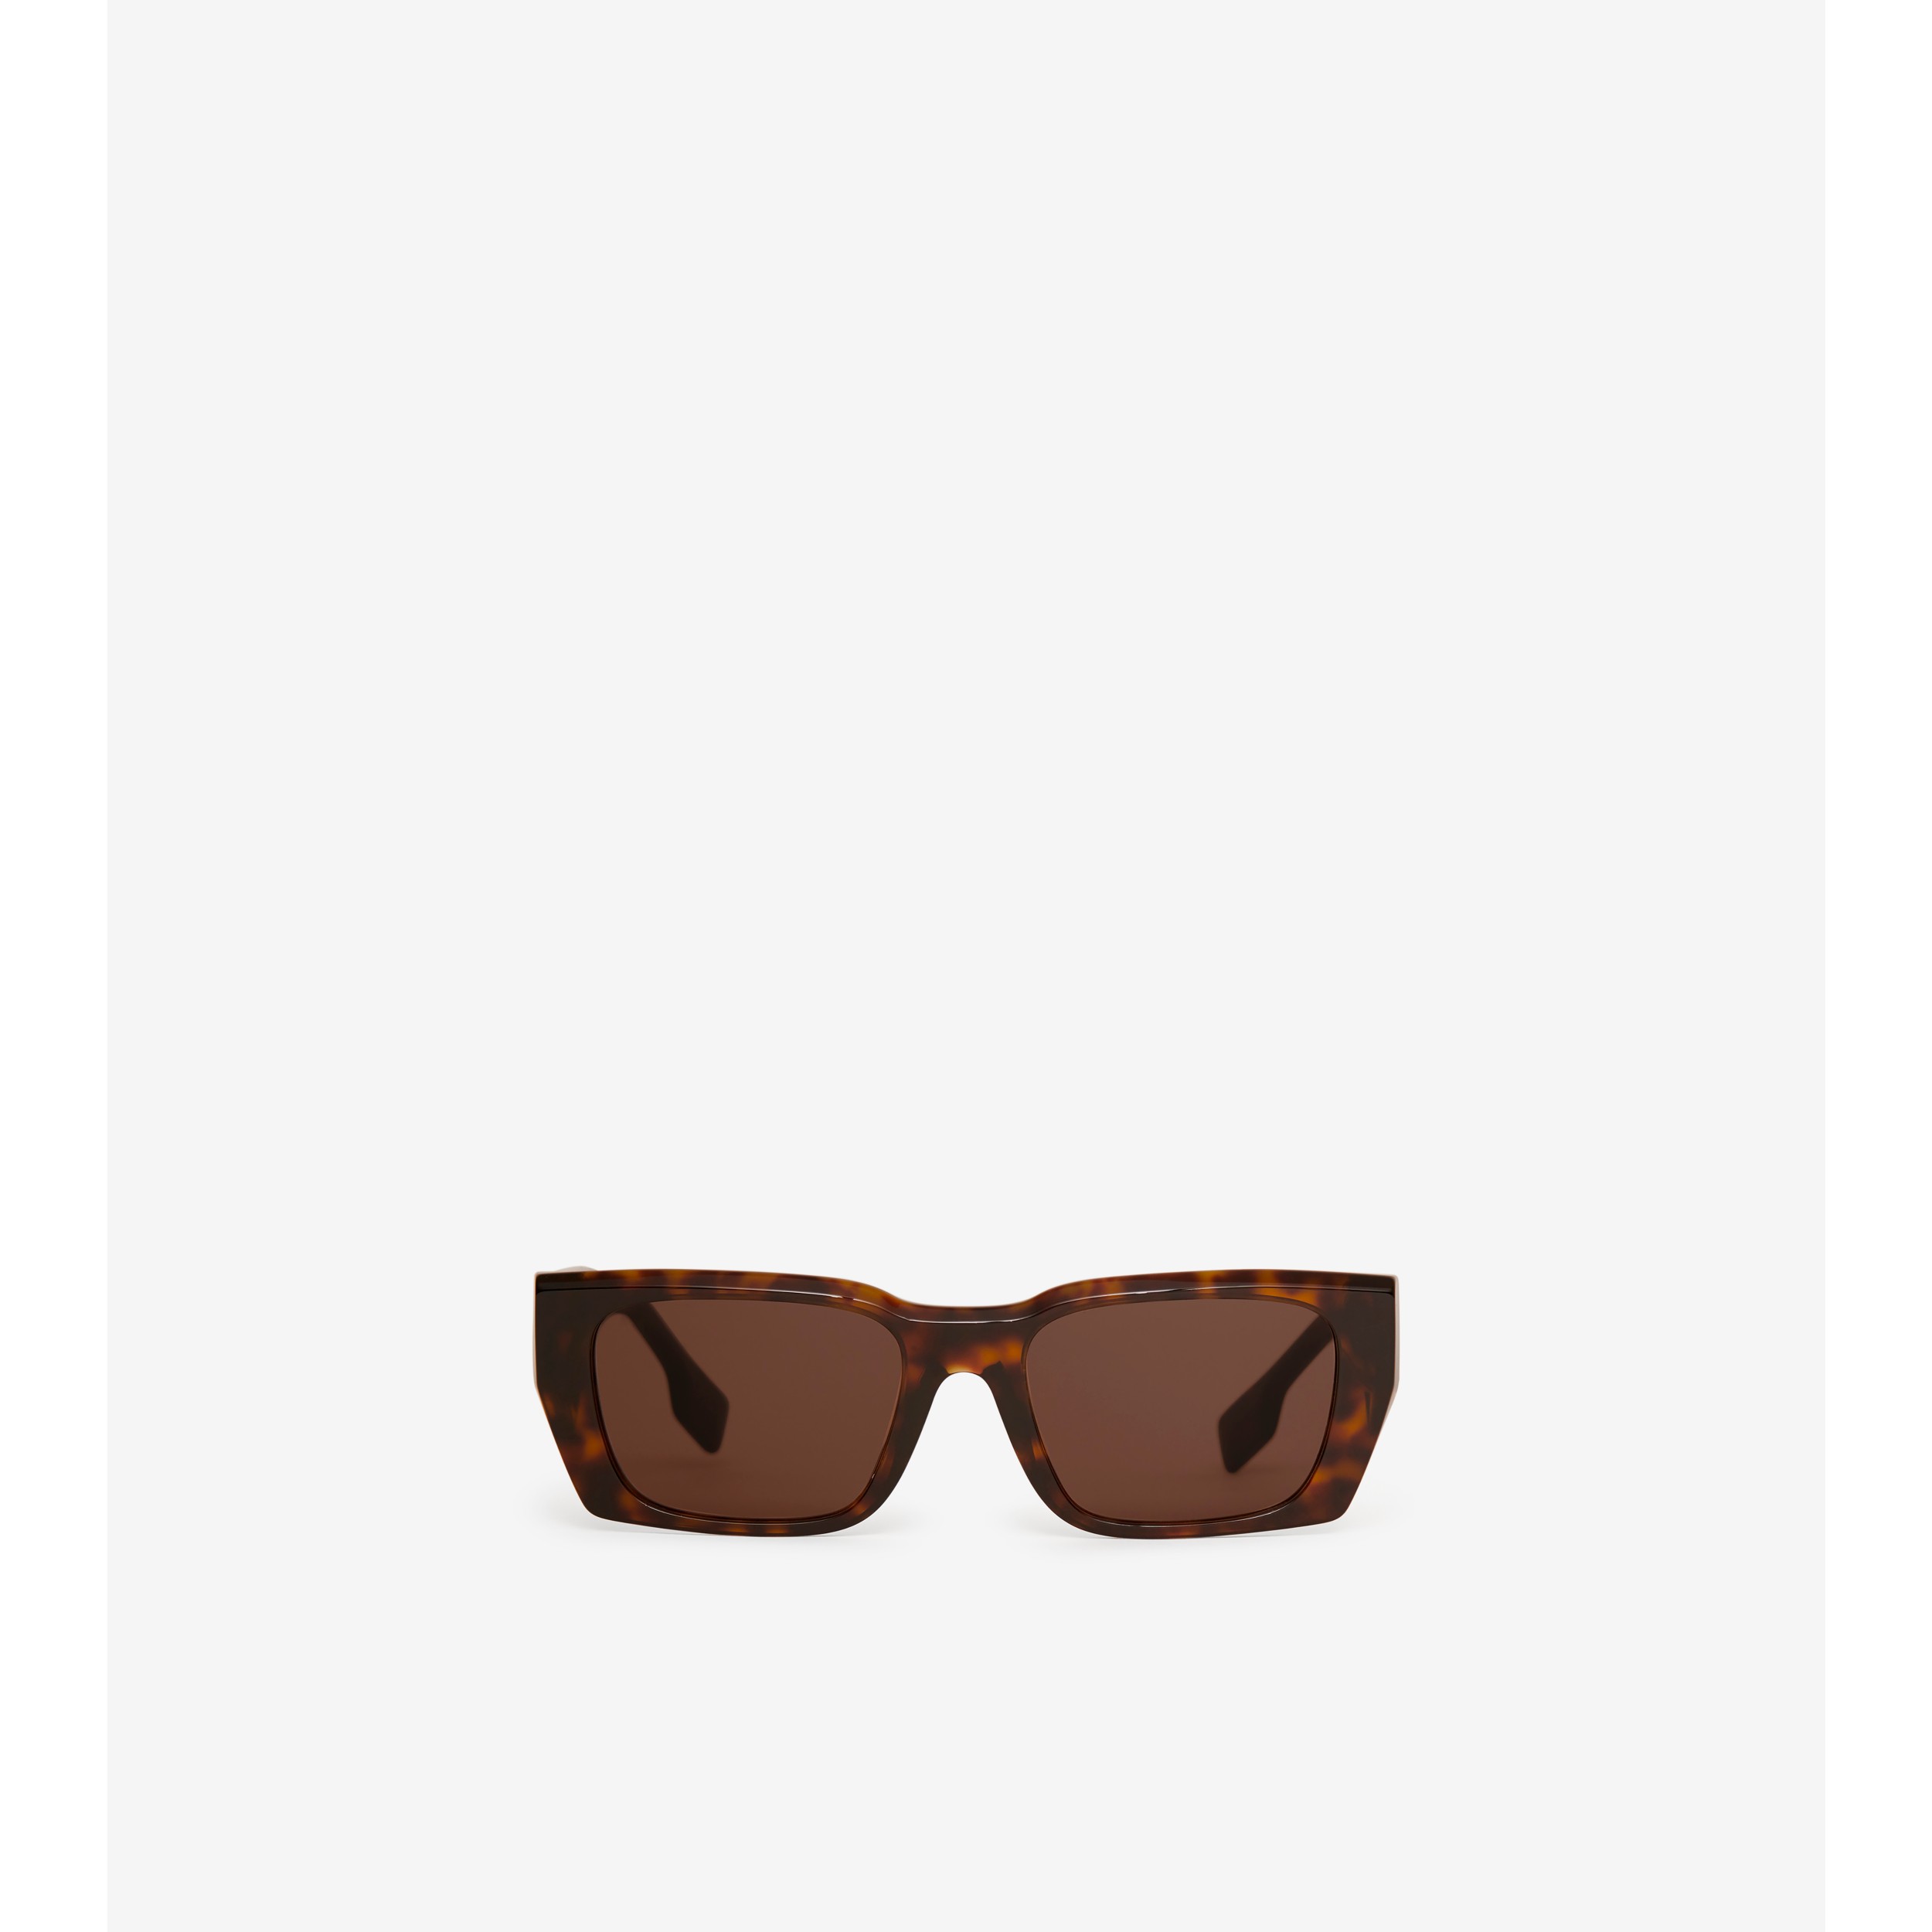 Burberry tortoiseshell rectangle-frame sunglasses, GottliebpaludanShops  Revival